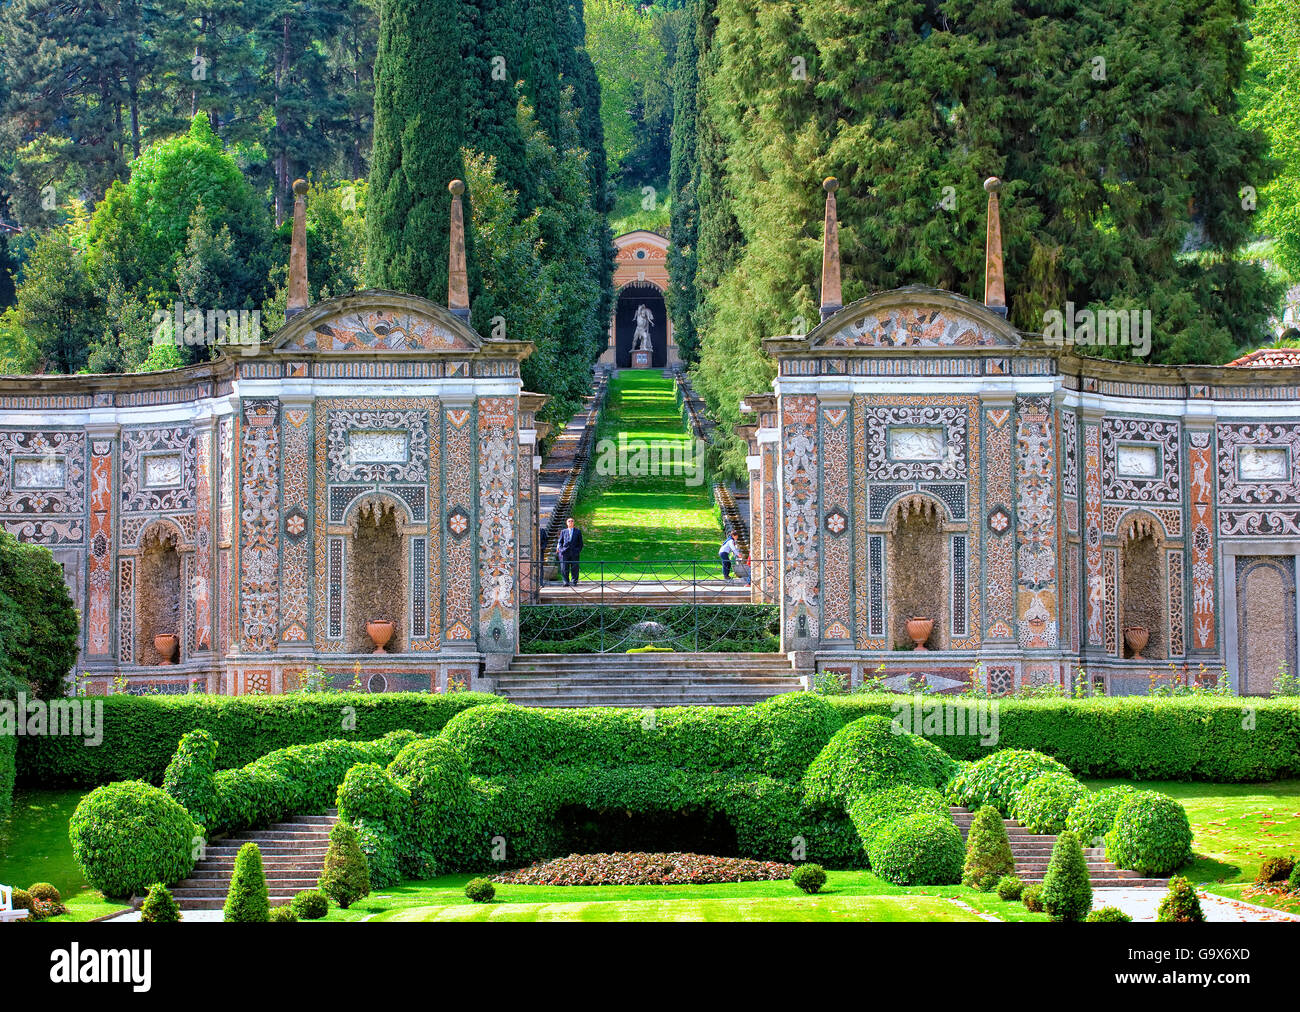 Villa d'este (como, italy) gardens hi-res stock photography and images -  Alamy